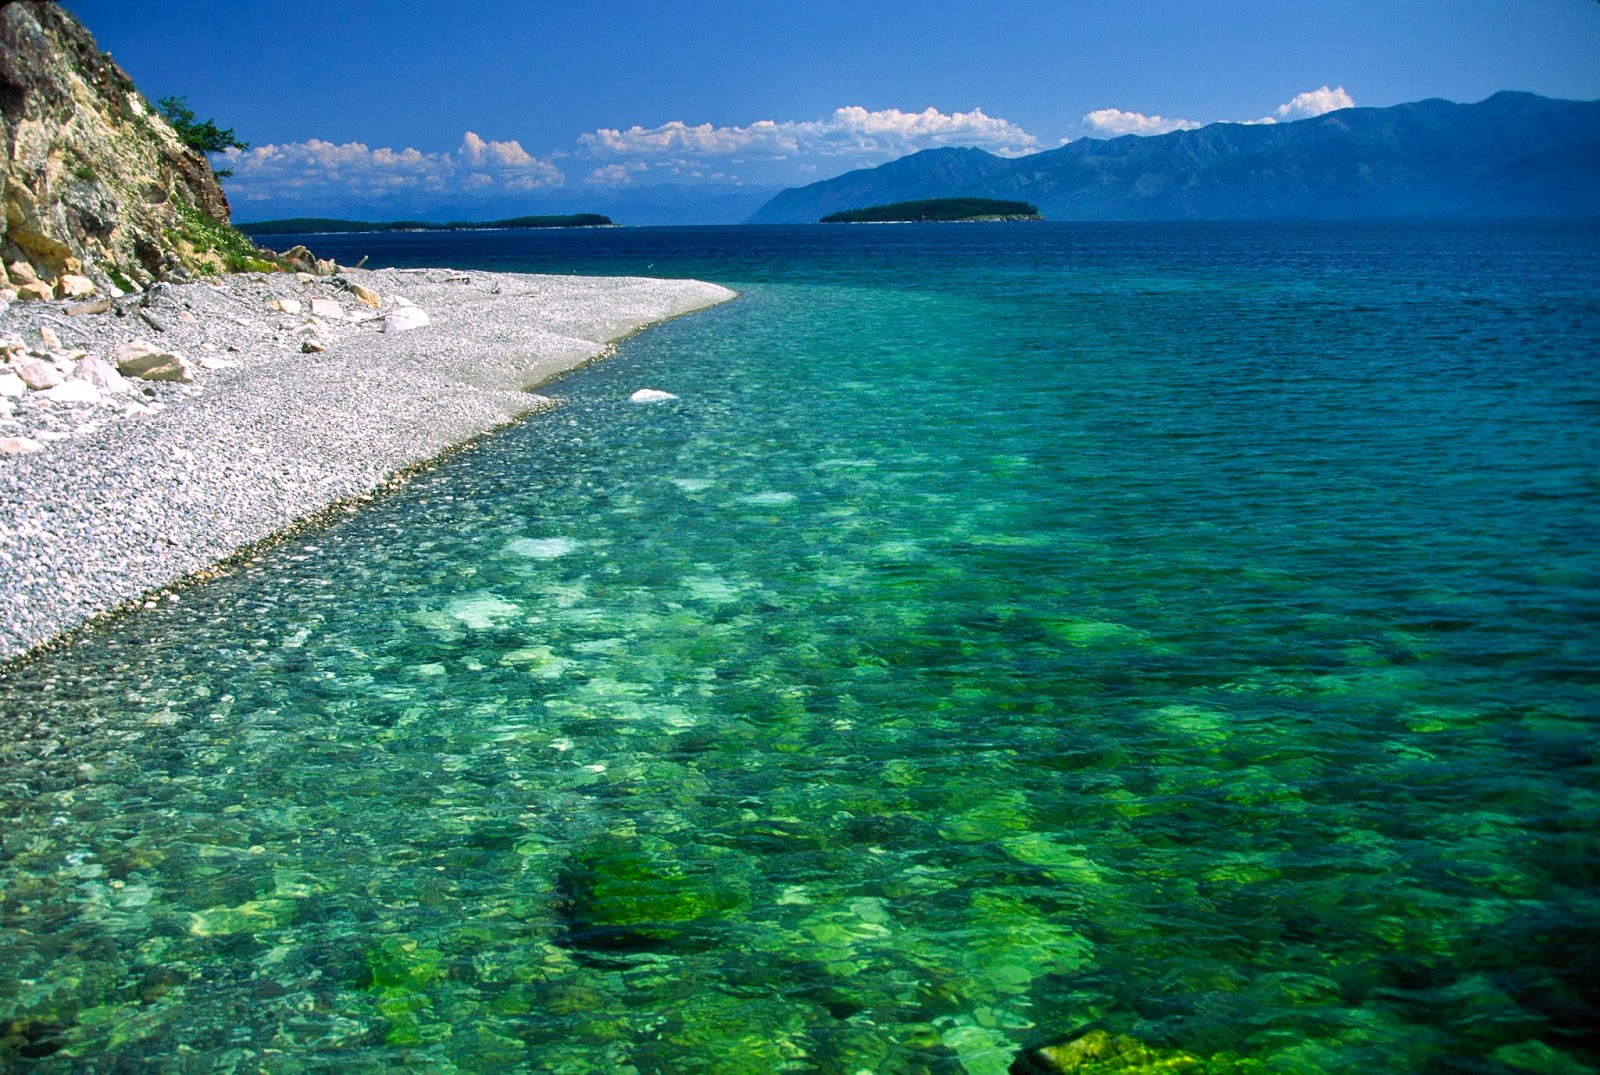 The Amazing World: Lake Baikal (Oldest Fresh Water Lake on Earth